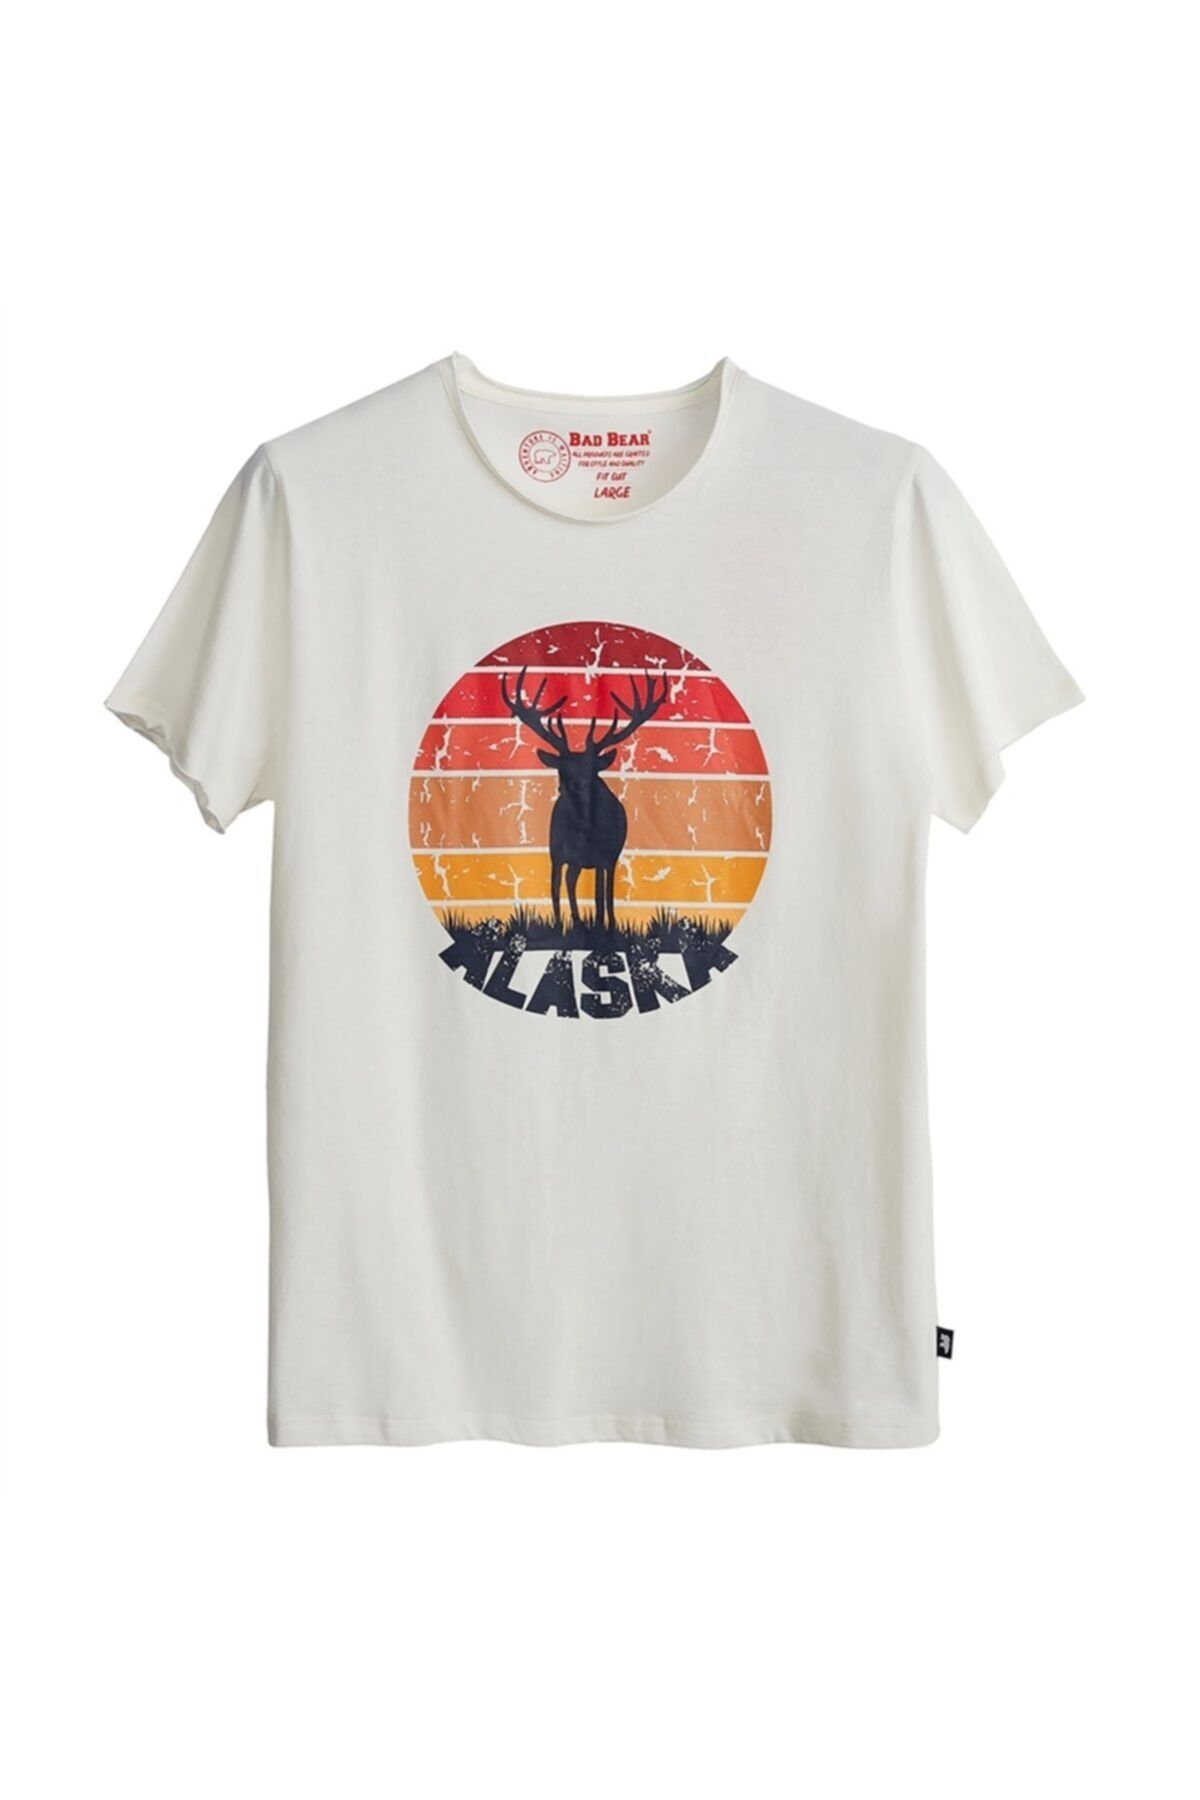 Bad Bear Erkek Kırık Beyaz Baskılı T-shirt 21.01.07.001